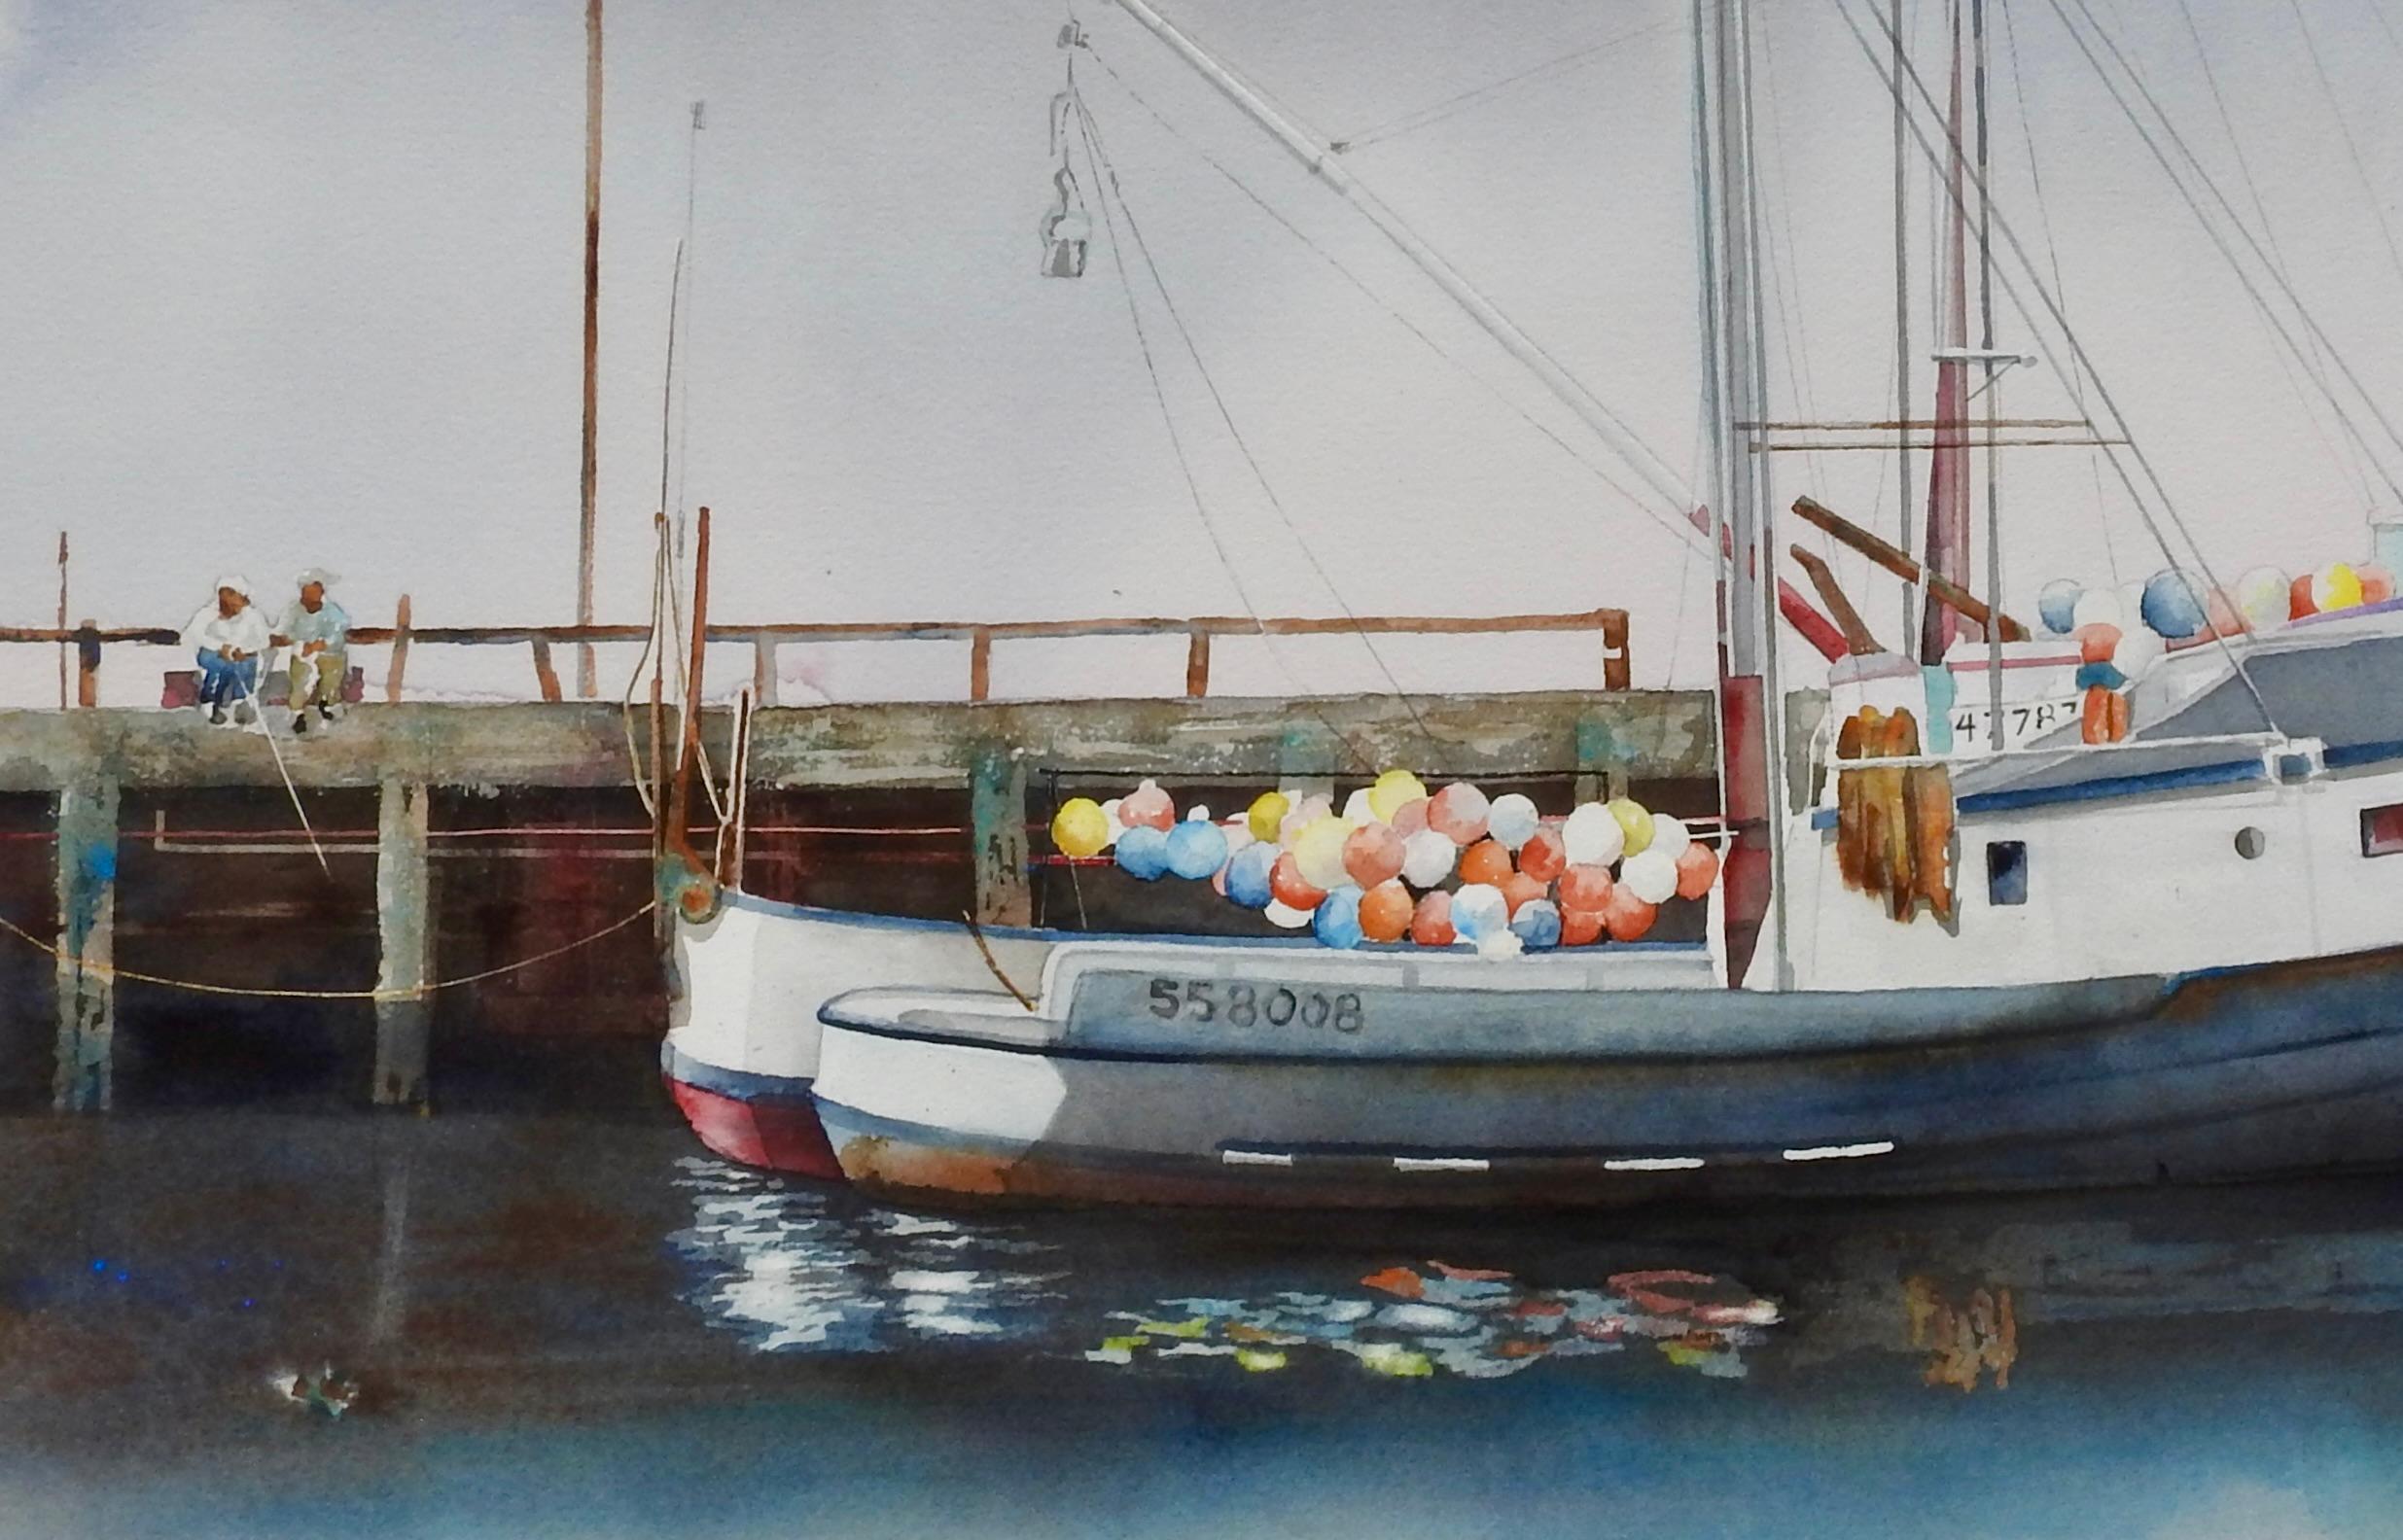 <p>Kommentare des Künstlers<br>Die bunten Bojen eines Fischerbootes im Hafen von San Pedro spiegeln sich auf dem dunklen, ruhigen Wasser. Der graue Himmel gibt einen friedlichen Ton an. Die beiden Männer, die von den Docks aus fischen, wecken beim